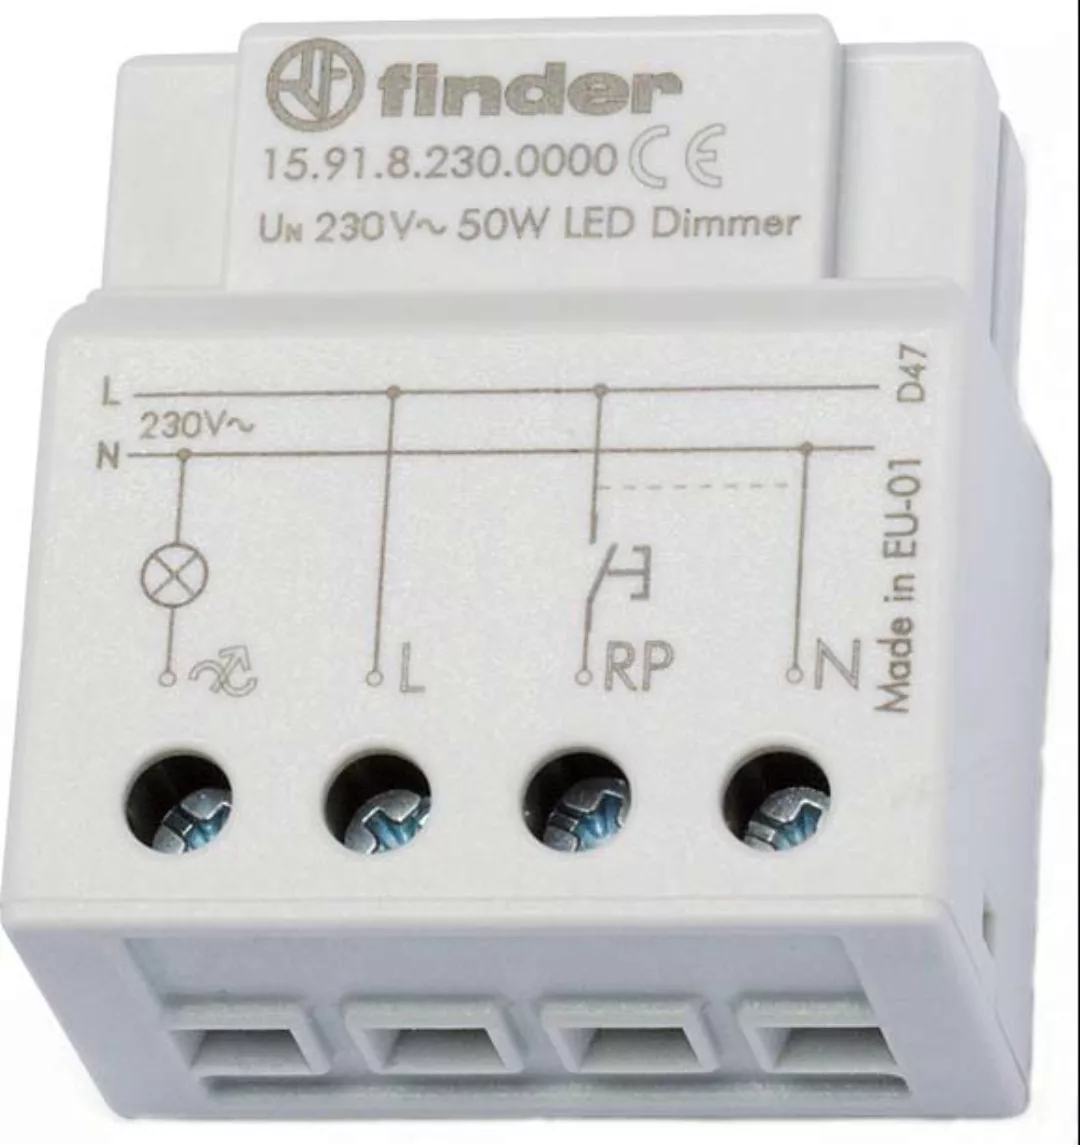 Finder Dimmer elektronisch 230VAC max.50W LED 15.91.8.230.0000 - 1591820000 günstig online kaufen